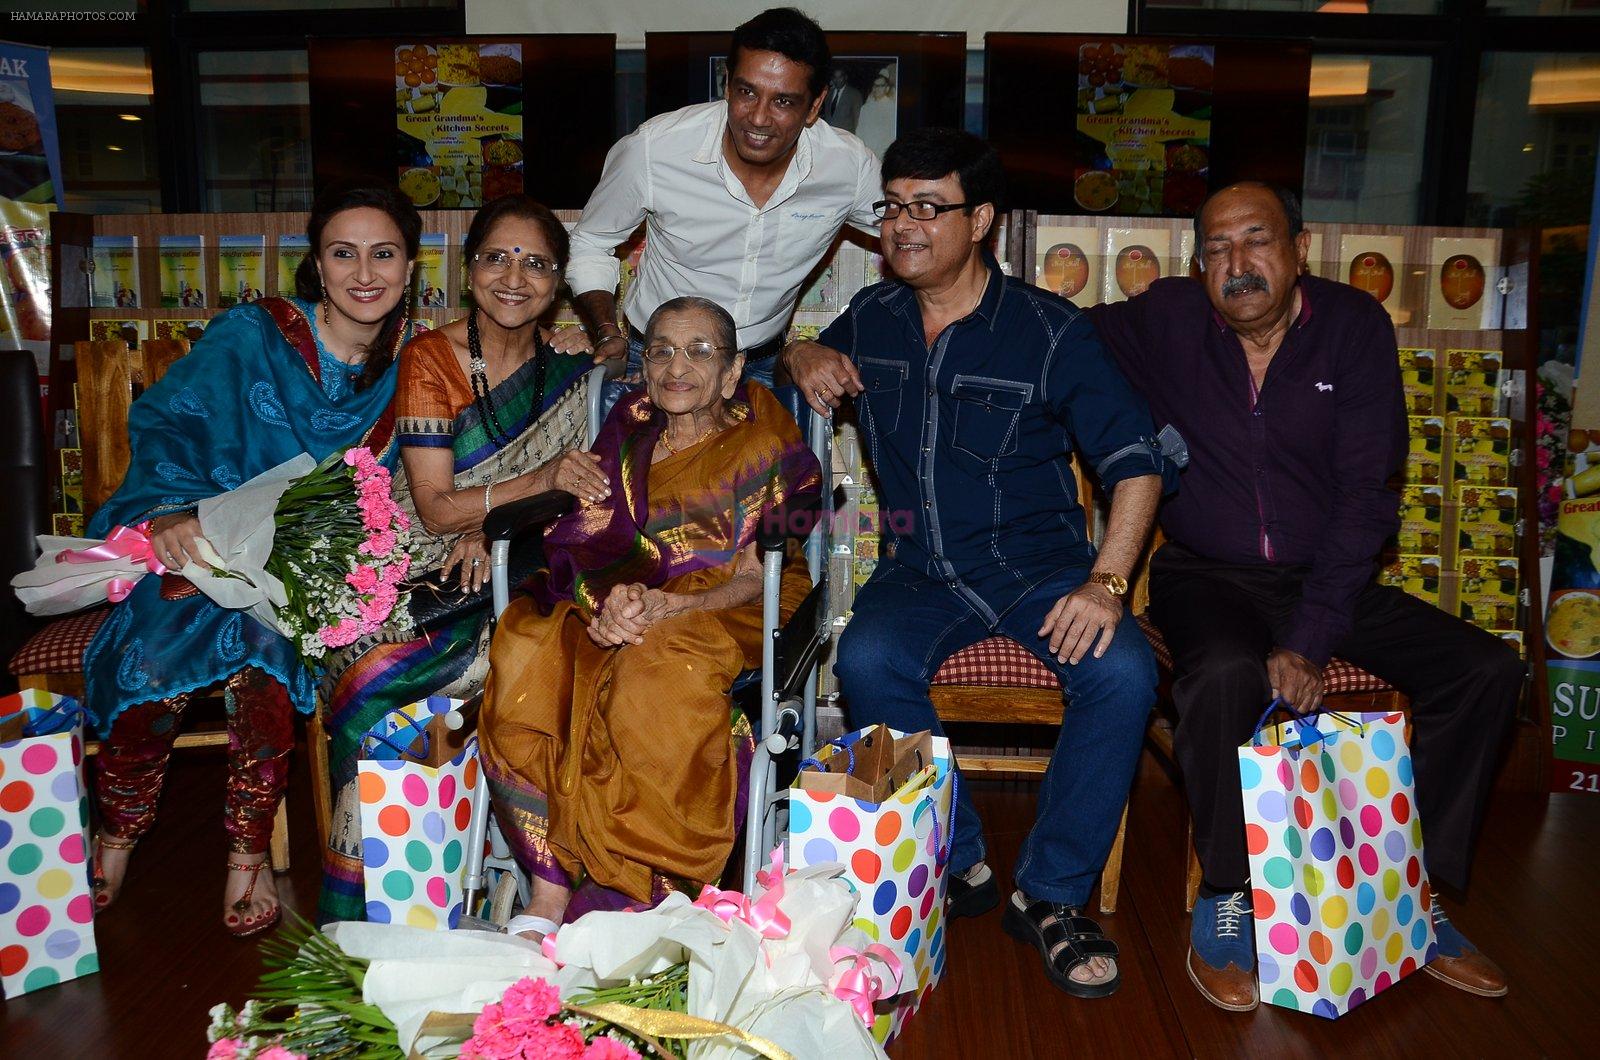 Sachin Pilgaonkar, Tinnu Anand, Sarita Joshi, Anup Soni, Juhi Babbar at Susheela Pathak's Great Grandma's Kitchen Secret Book Launch in Mumbai on 29th March 2015